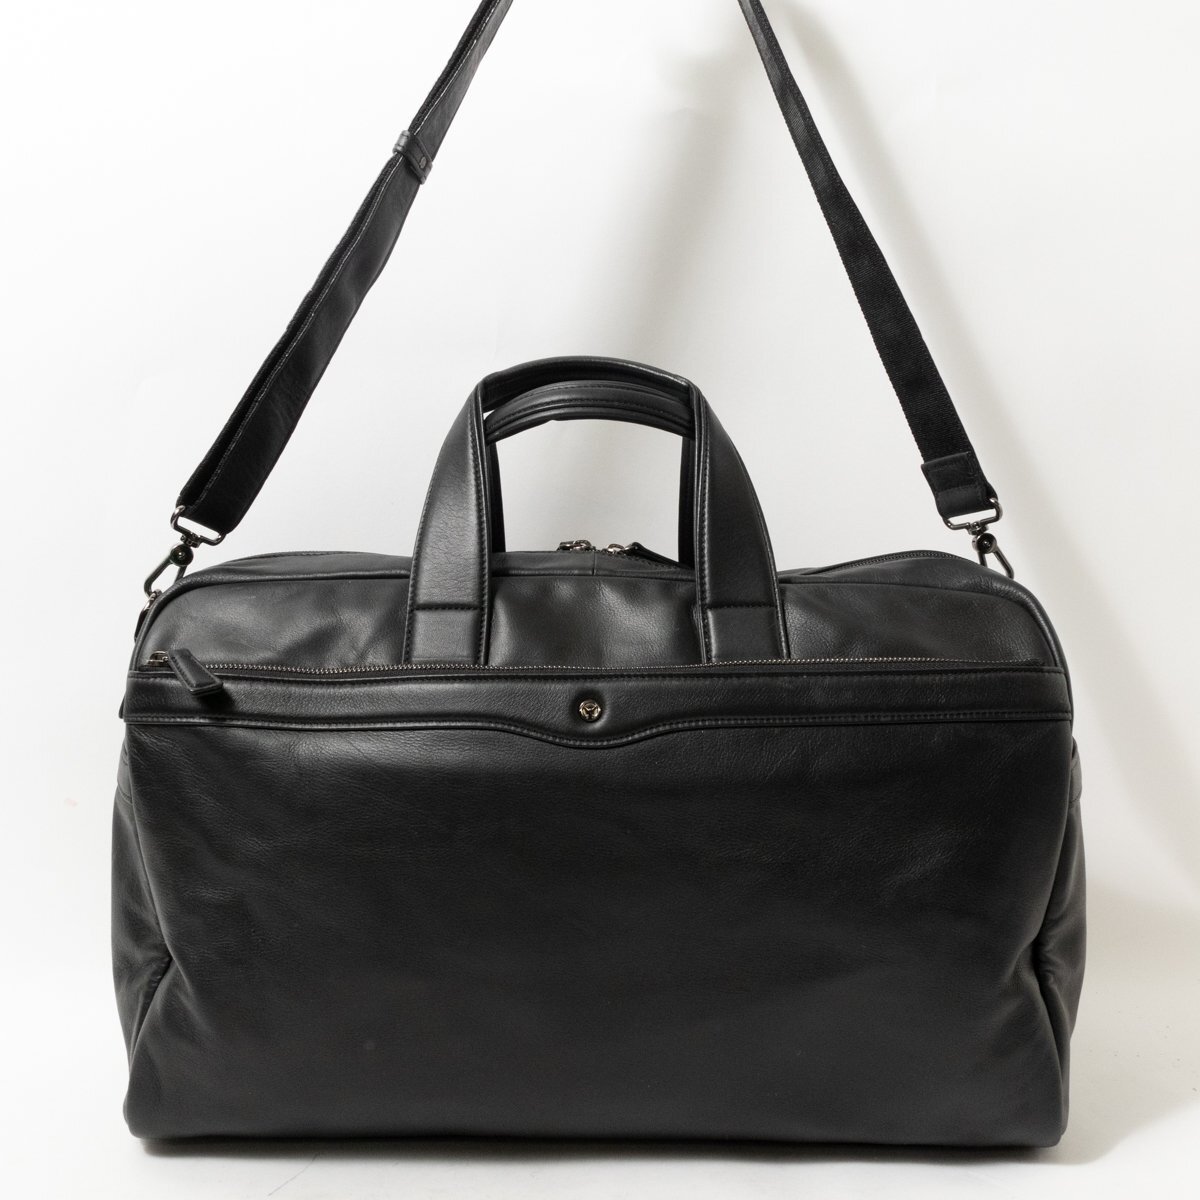 [1 иен старт ]OFFERMANNo мех man 2way сумка "Boston bag" сумка на плечо джентльмен сумка черный чёрный кожа мужской застежка-молния открытие и закрытие одноцветный 